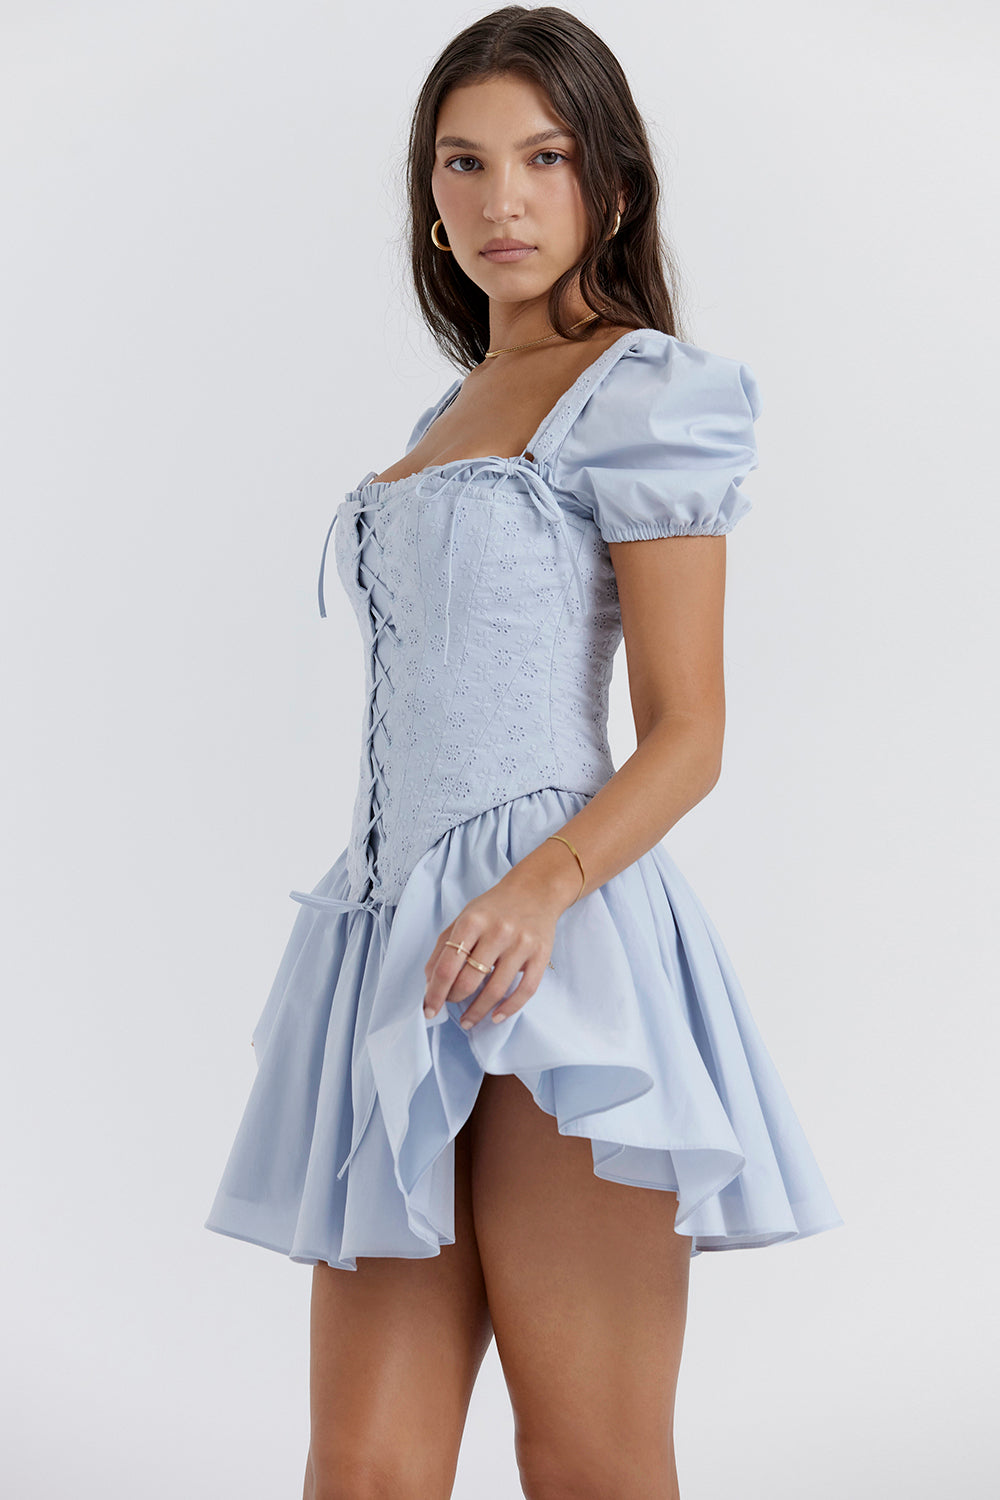 Oaklee -  Weich Blau Stickerei Korsett Mini Kleid